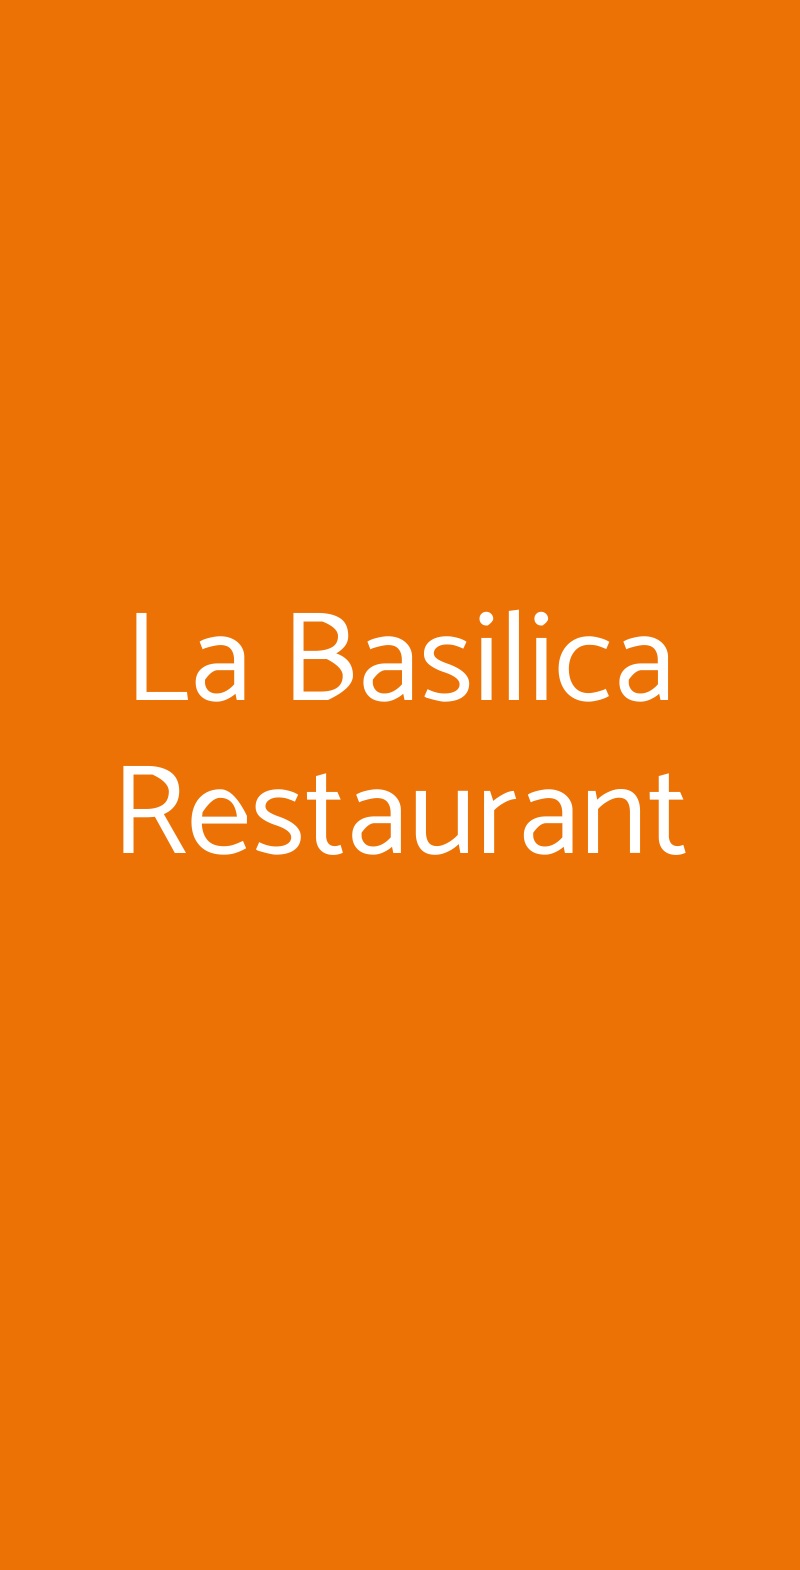 La Basilica Restaurant Sorrento menù 1 pagina